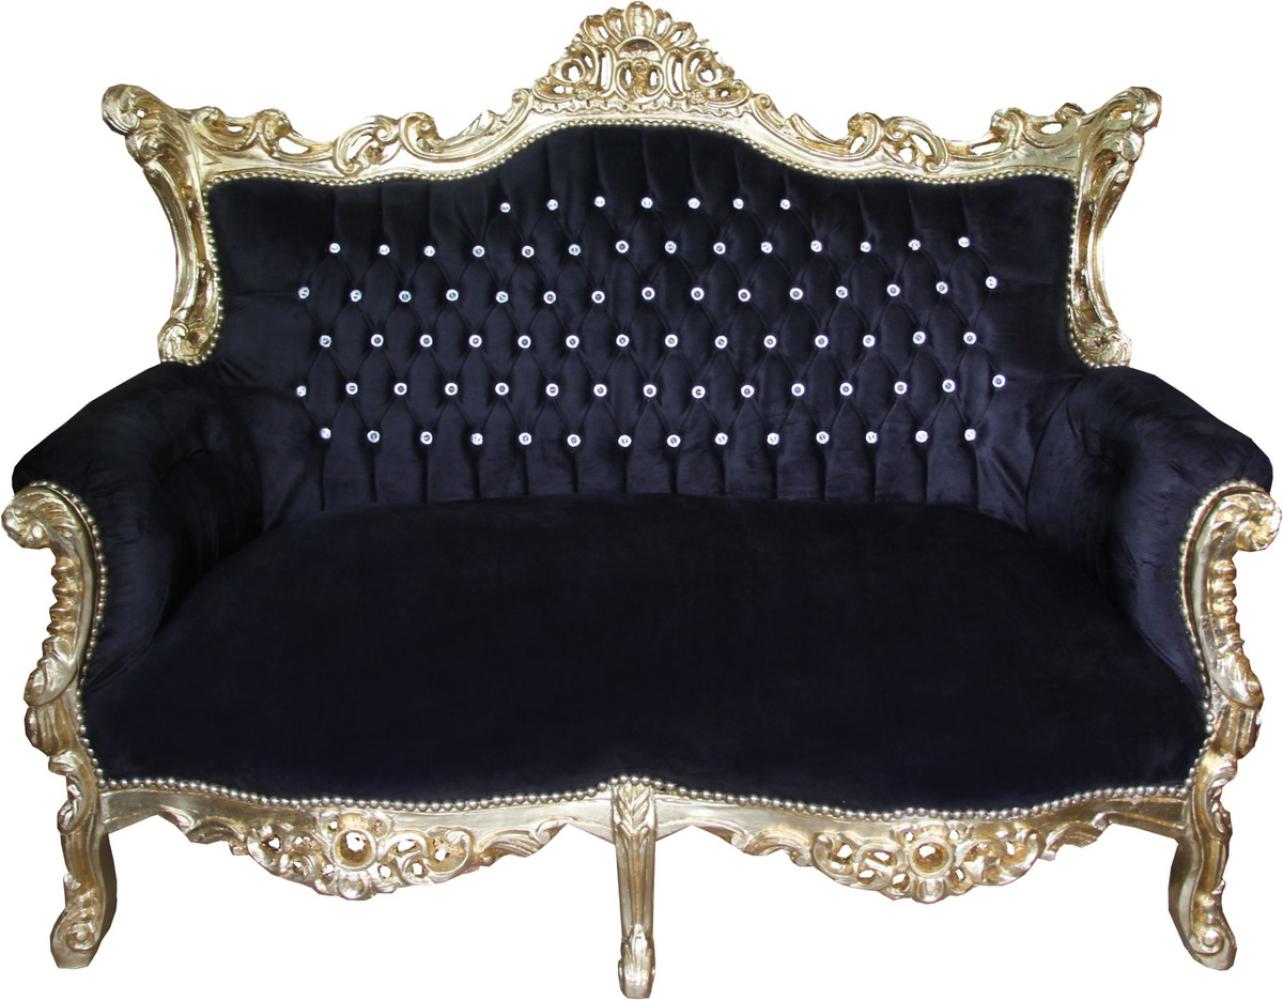 Casa Padrino Barock 2-er Sofa Master Schwarz / Gold mit großen Bling Bling Glitzersteinen - Antik Stil Möbel Bild 1